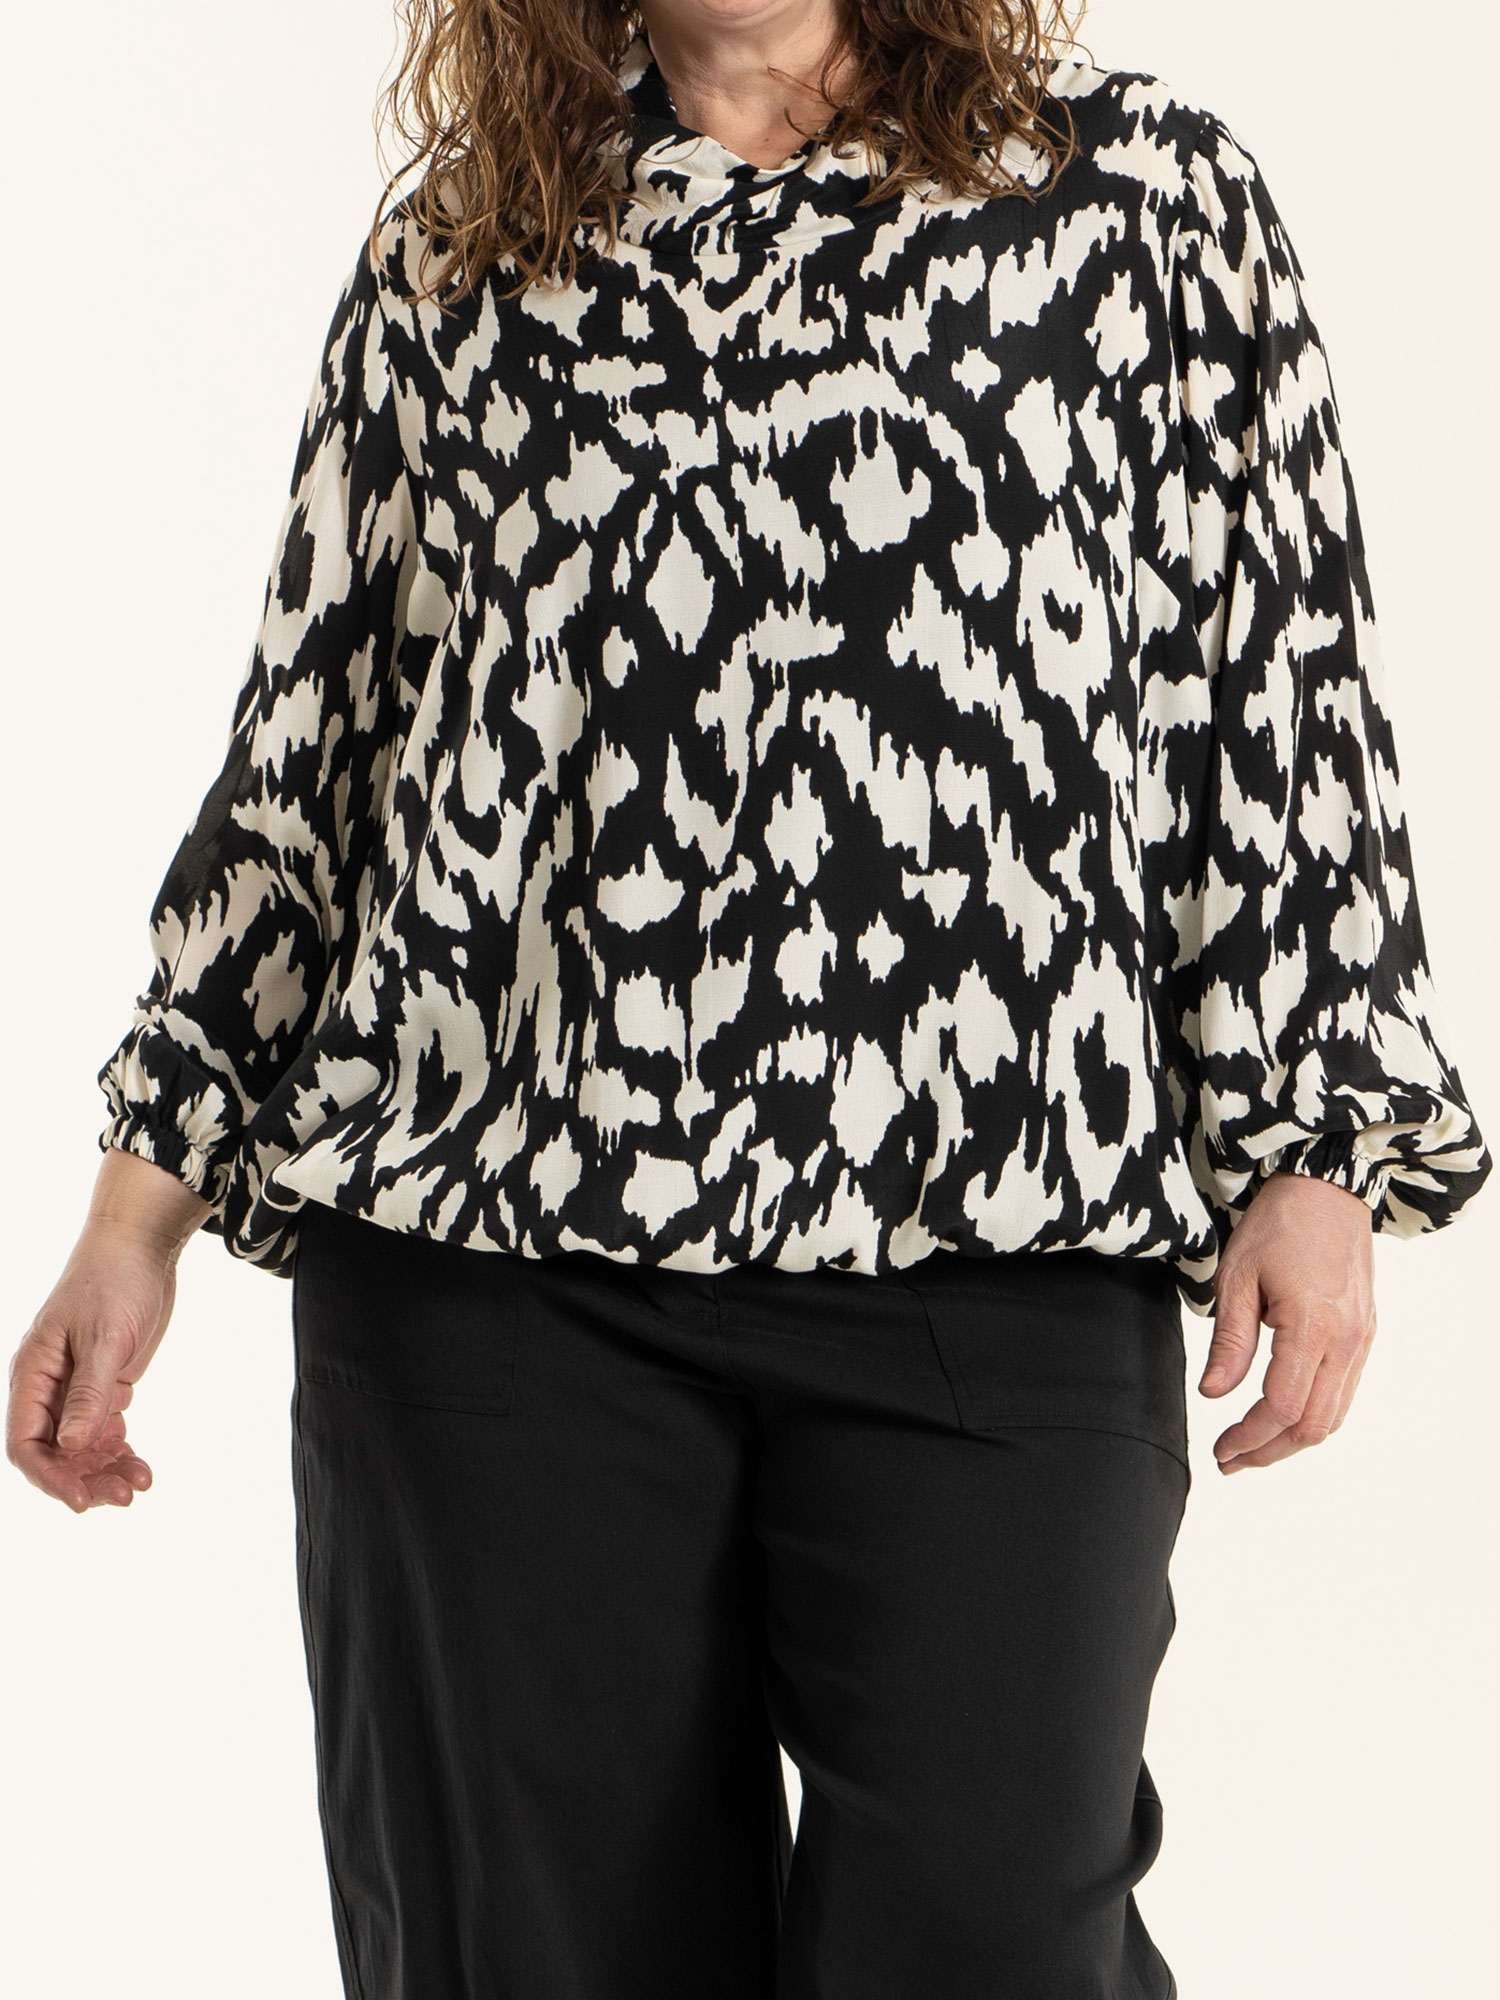 ELISA - Viskose bluse i sort og råhvid mønster fra Gozzip